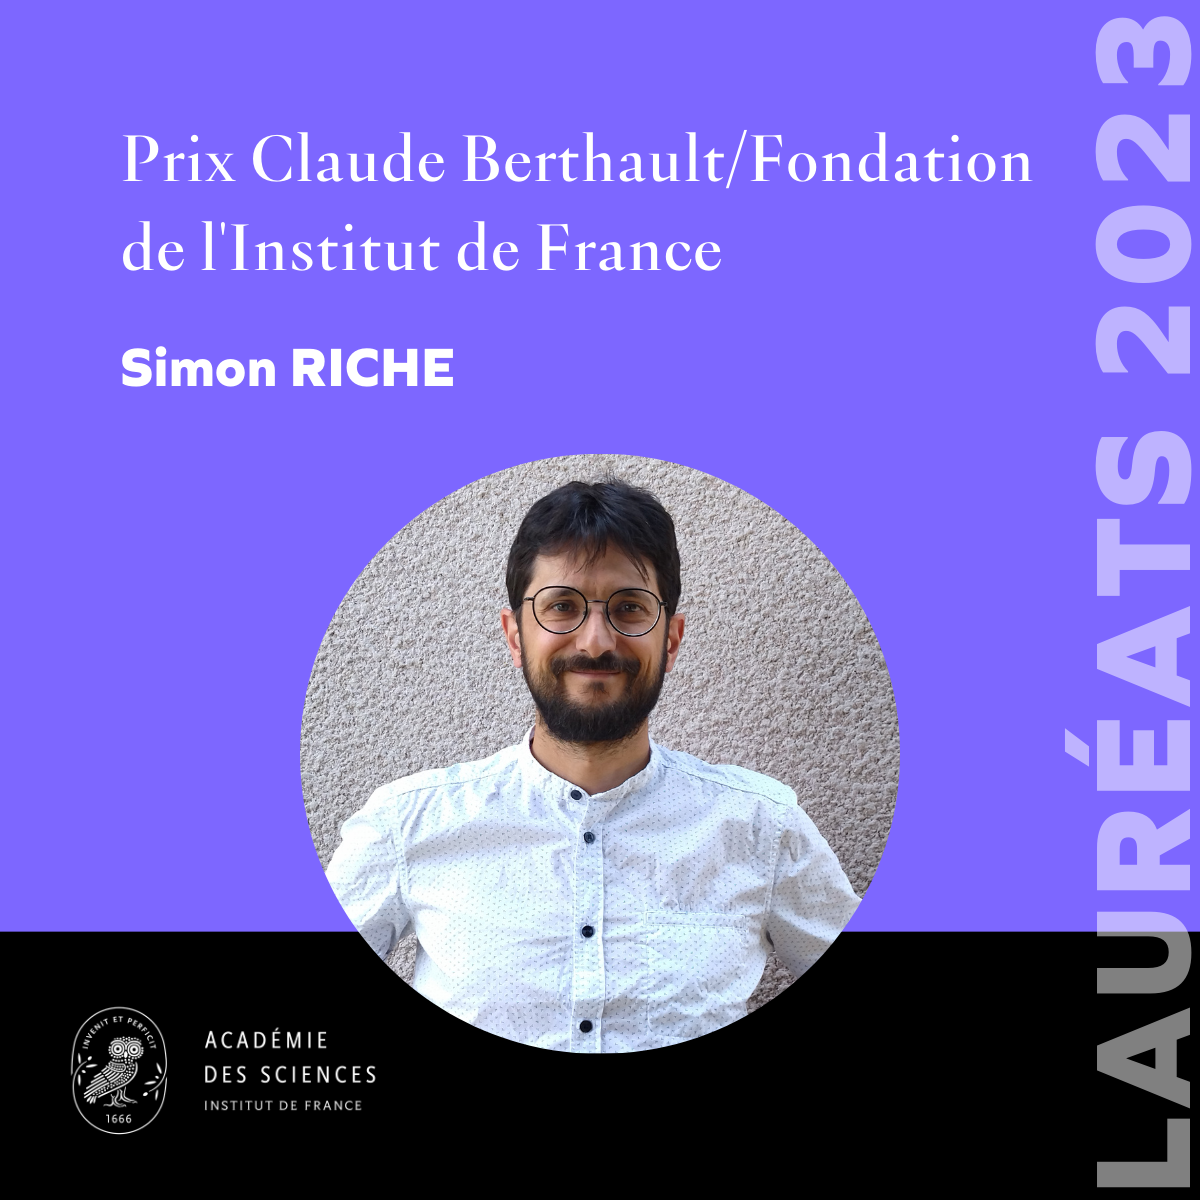 Simon Riche